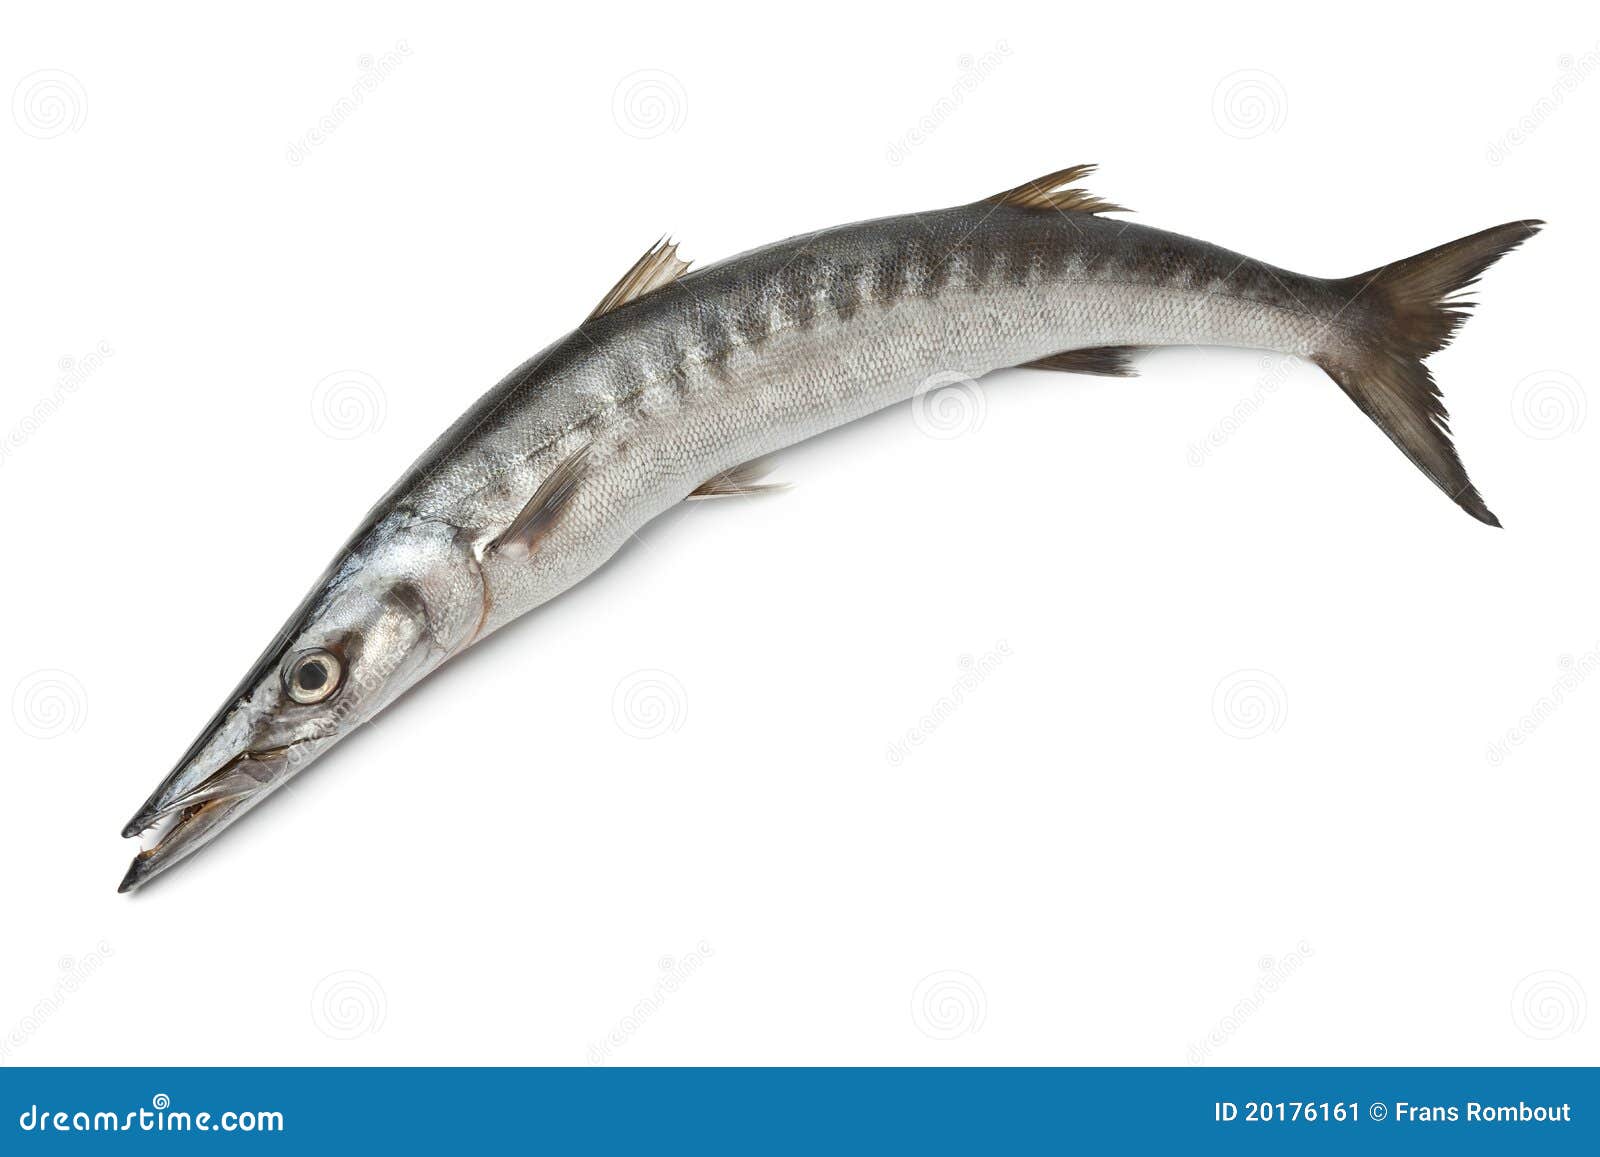 whole fresh barracuda fish